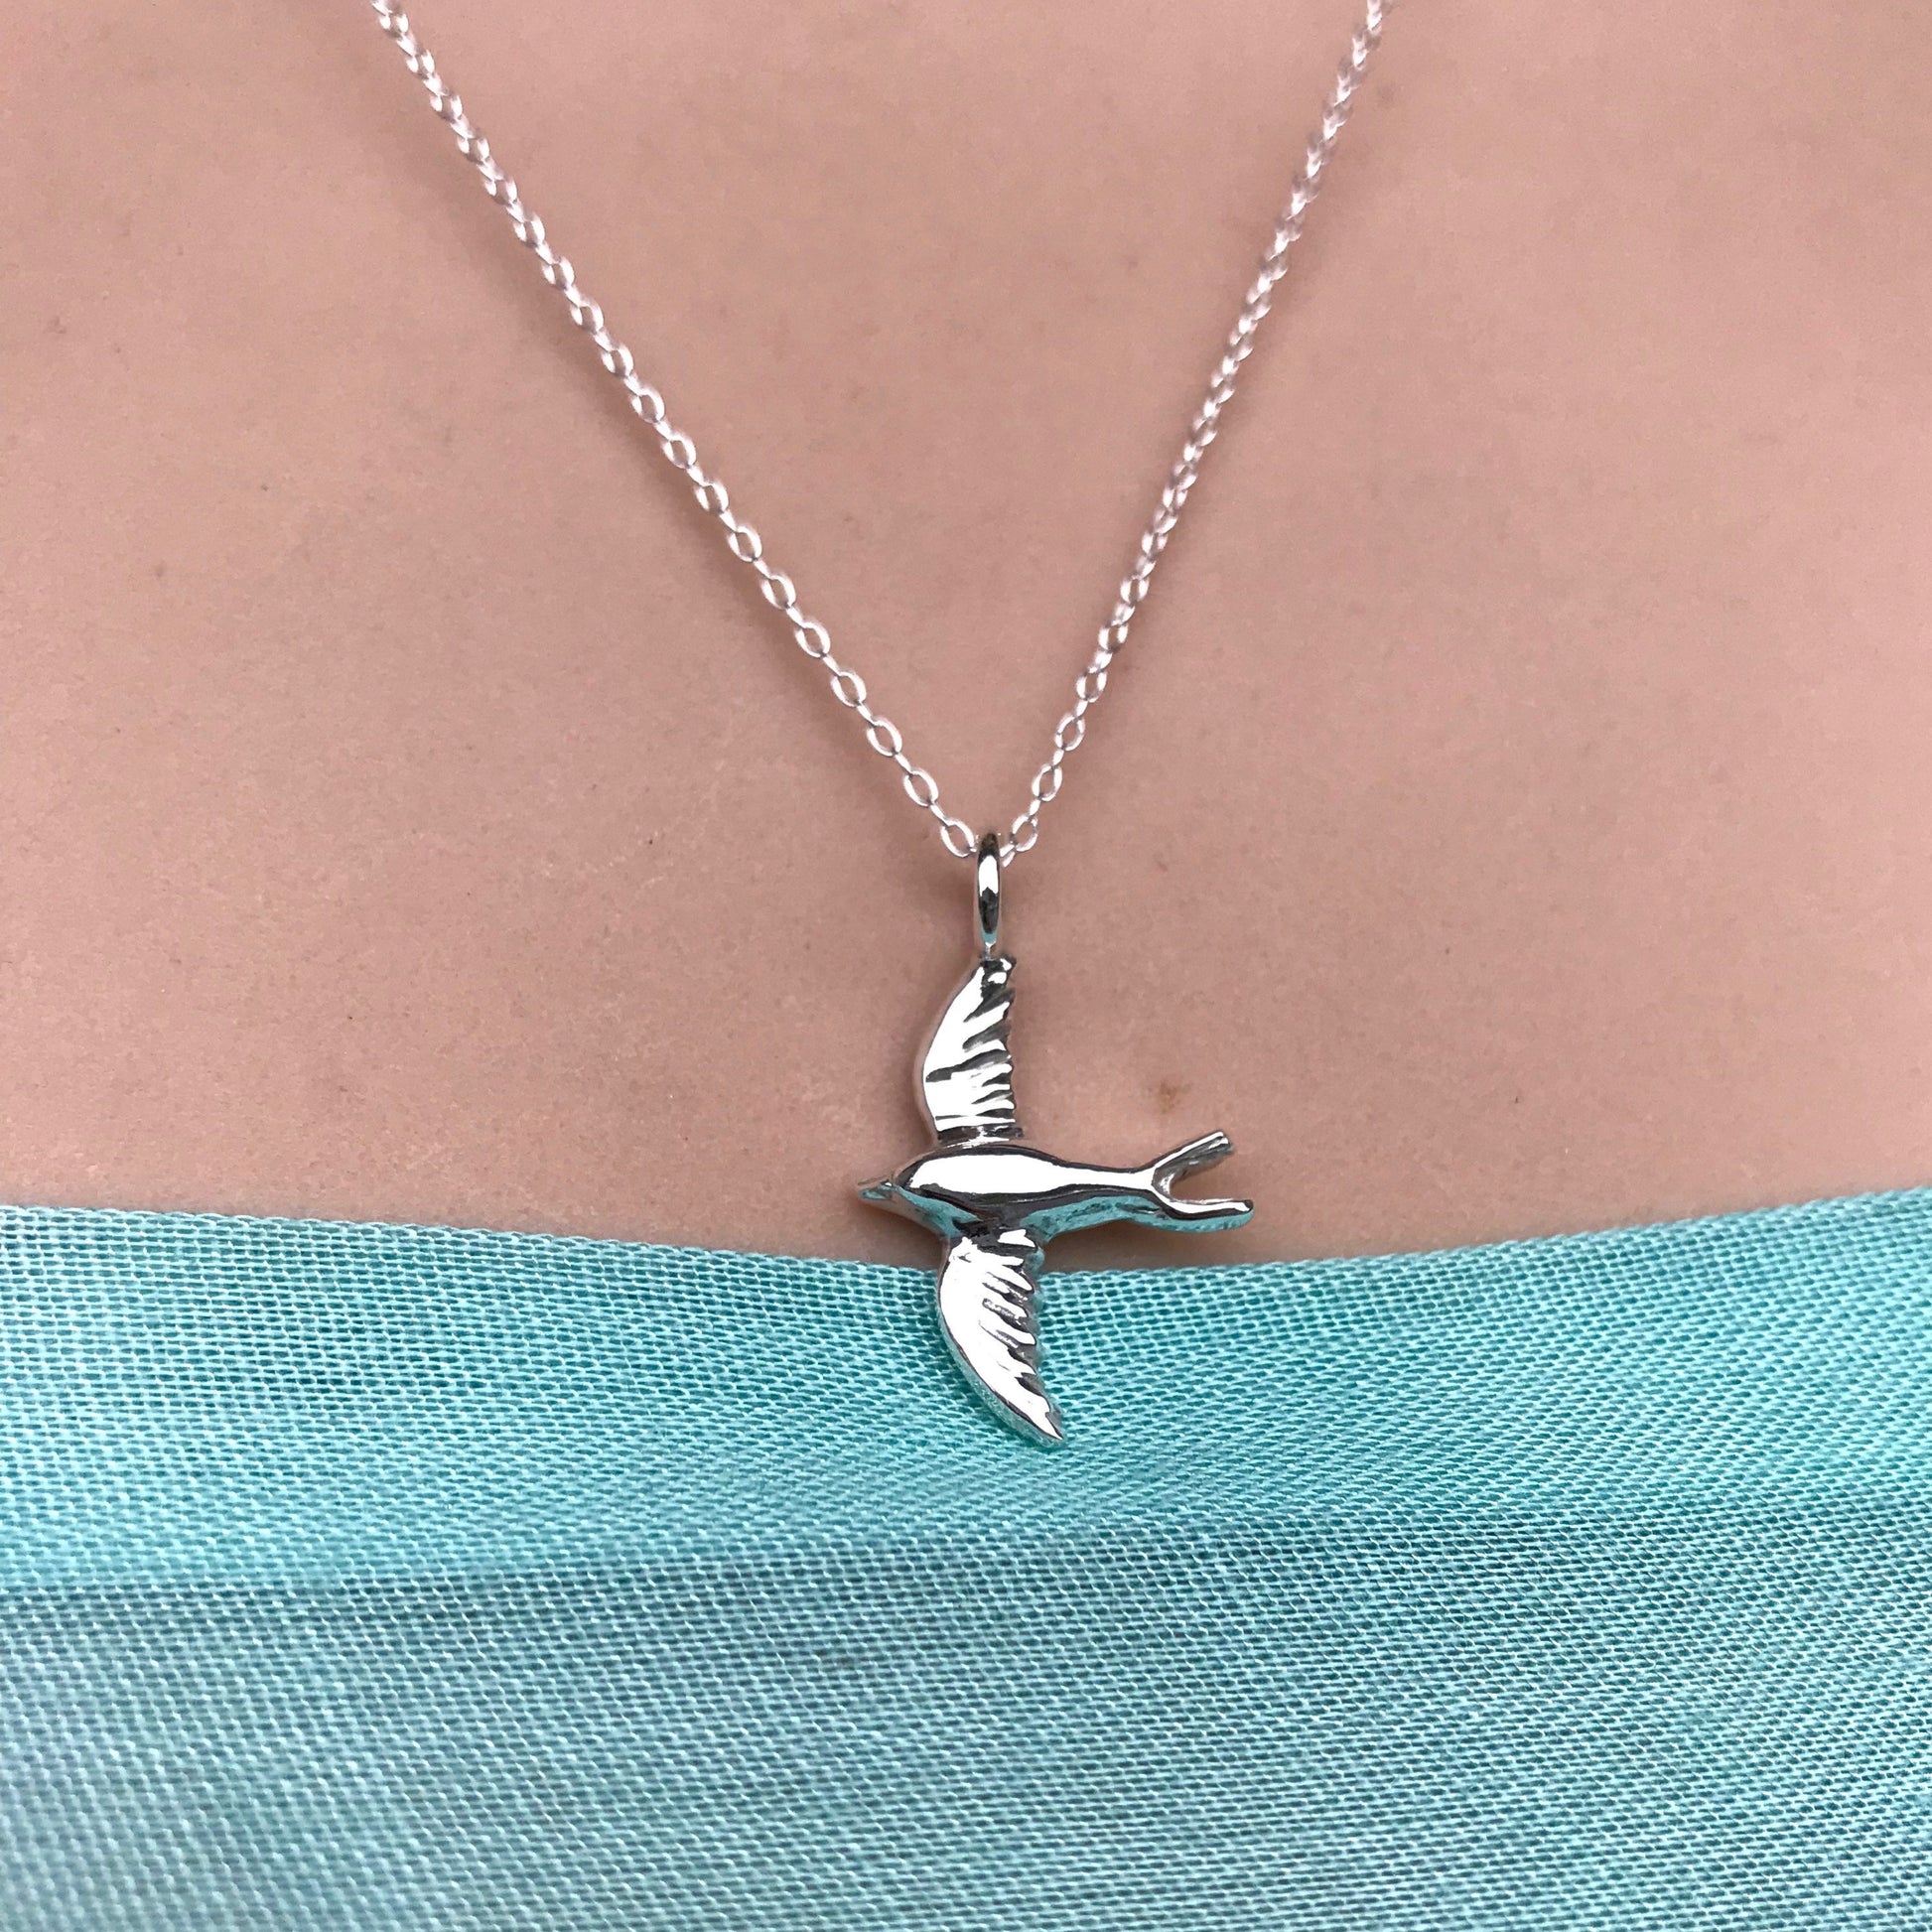 Swift bird necklace